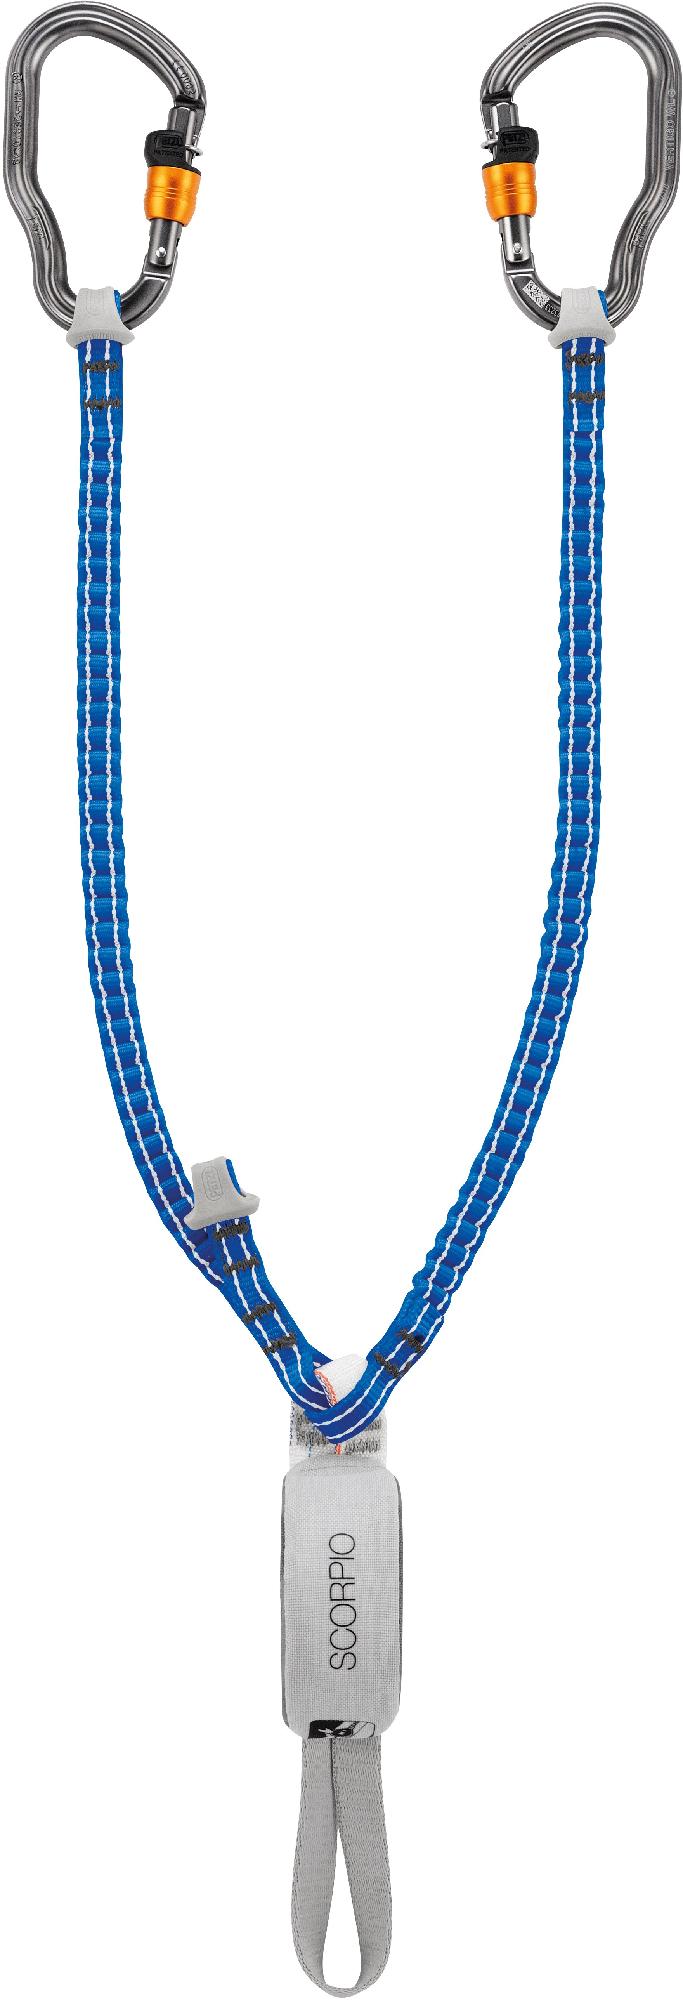 Ремешок для головокружения Скорпиона Petzl, синий комплект via ferrata vertigo petzl серый